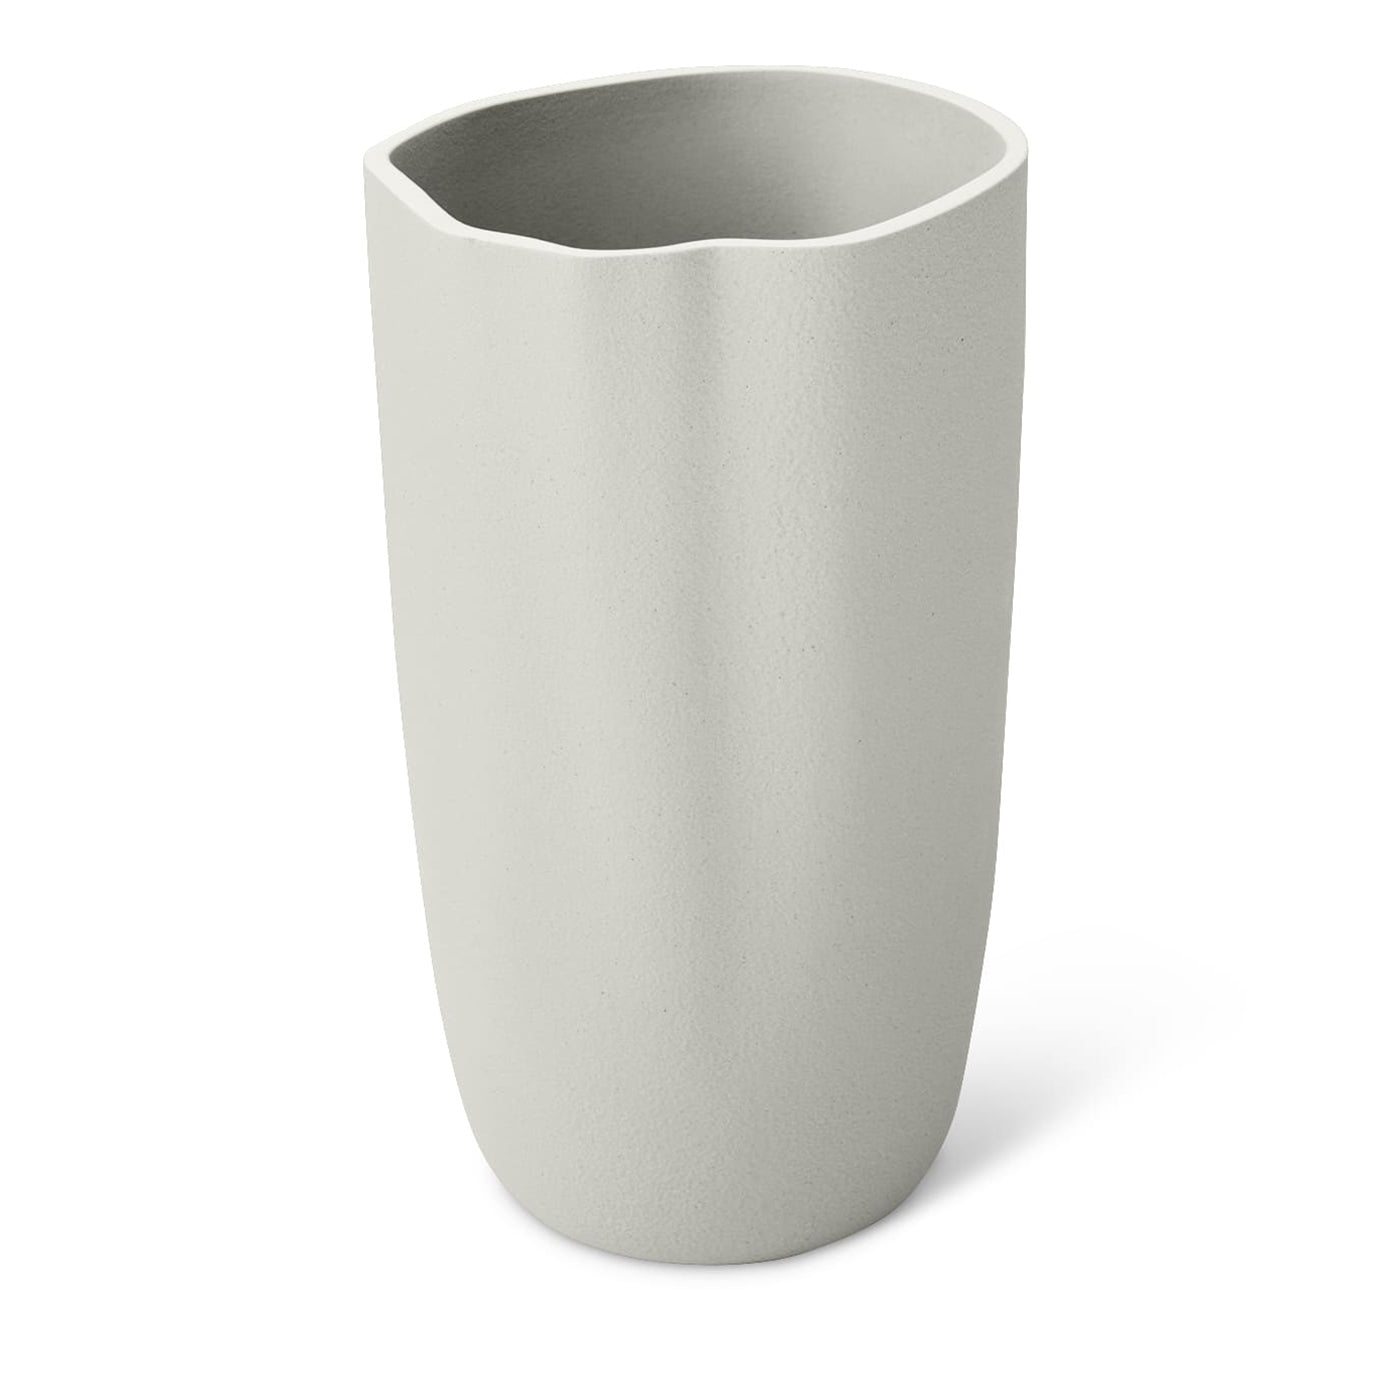 Big Tidal Gray Vase - Alternative view 1